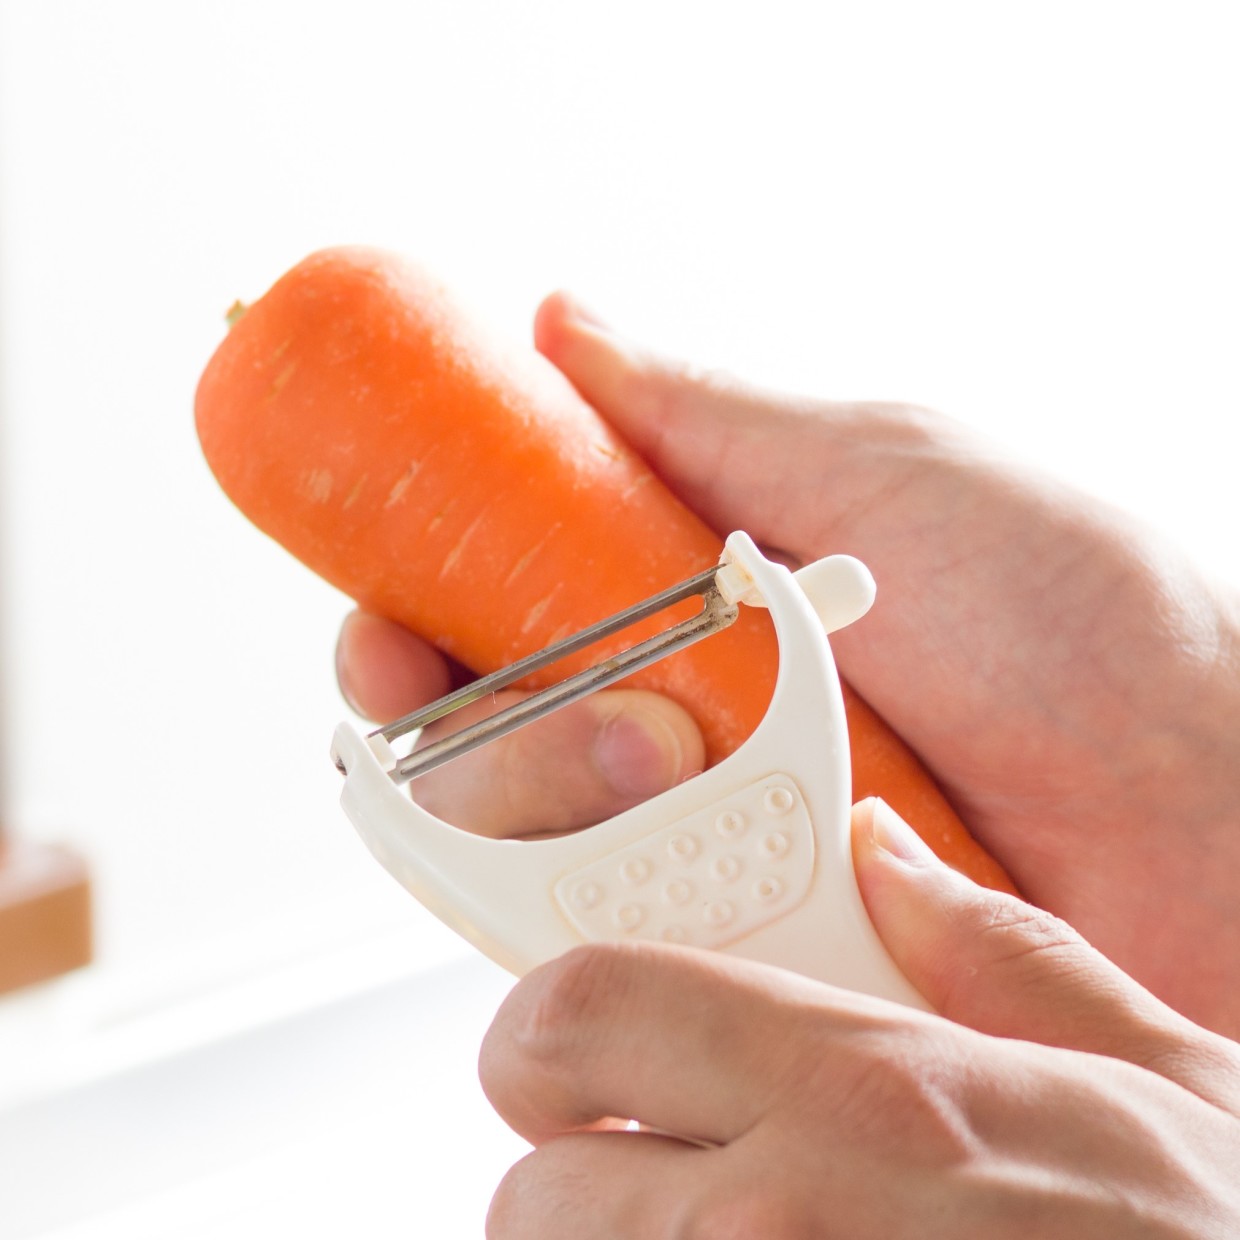  手を切りそうでヒヤヒヤする…が無くなる。「ピーラー」で安全に野菜の皮を剥く方法 